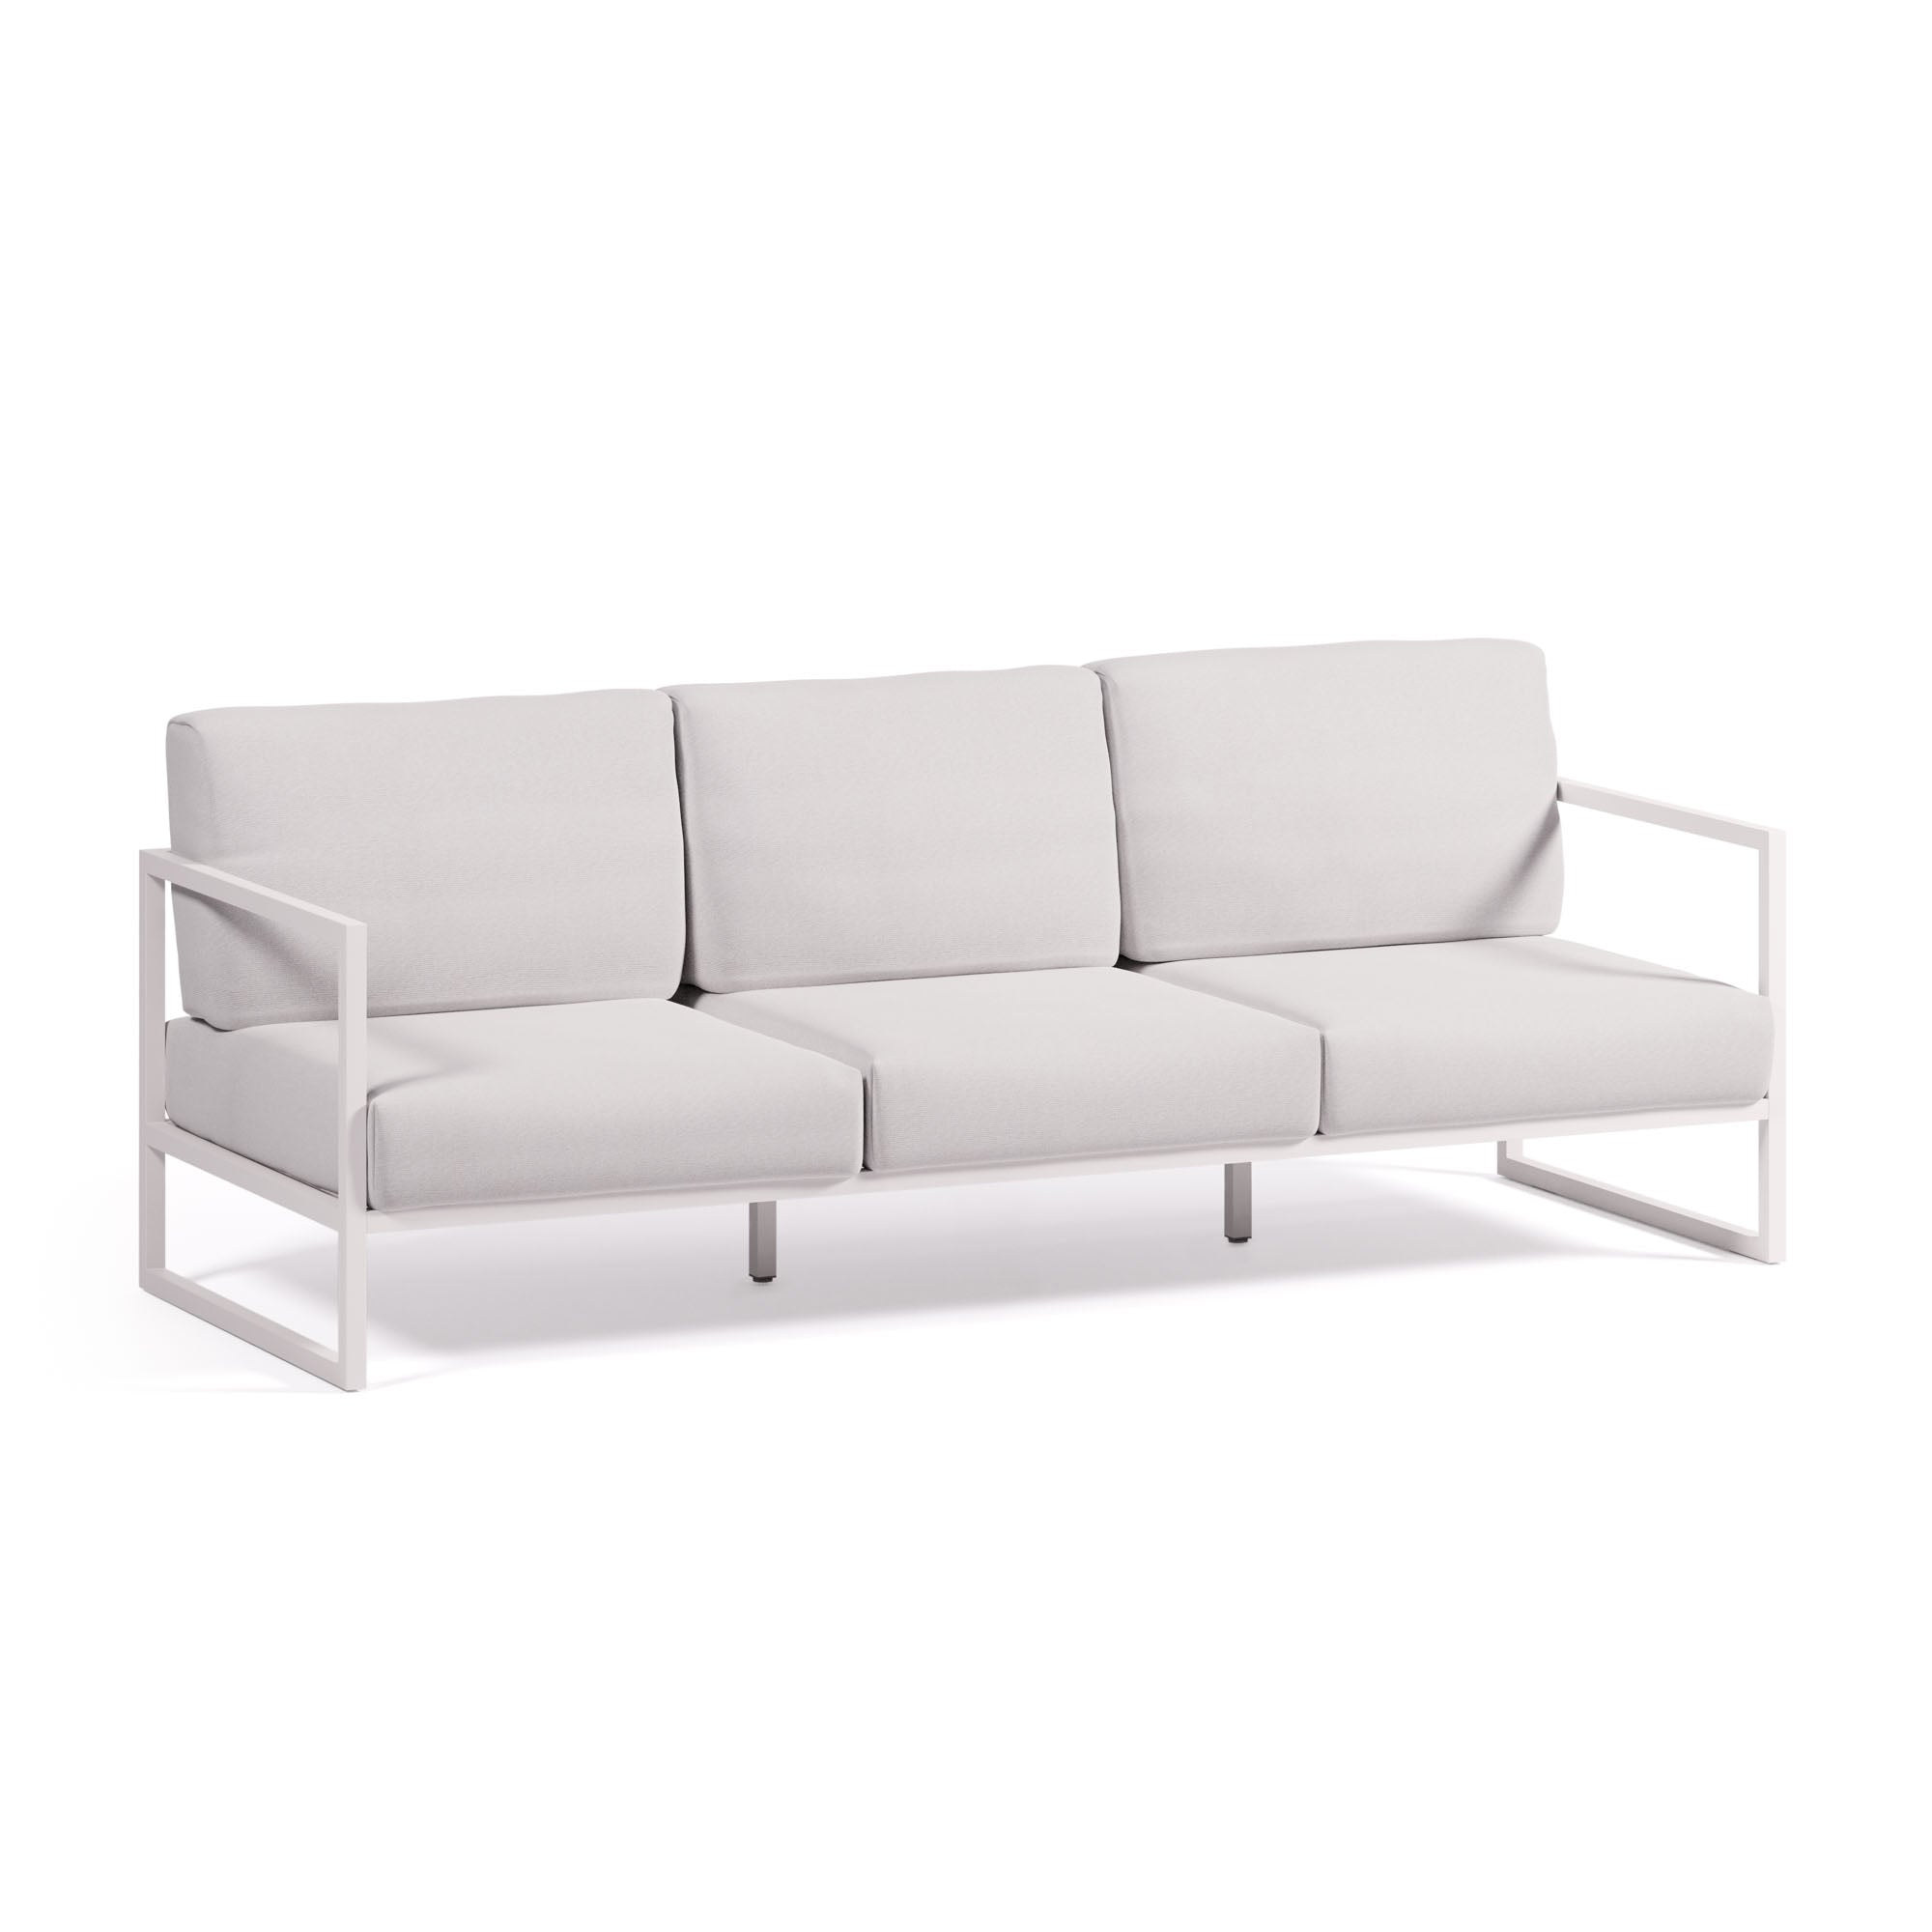 Comova 100% kültéri 3 személyes kanapé, fehér és fehér alumínium, 222 cm